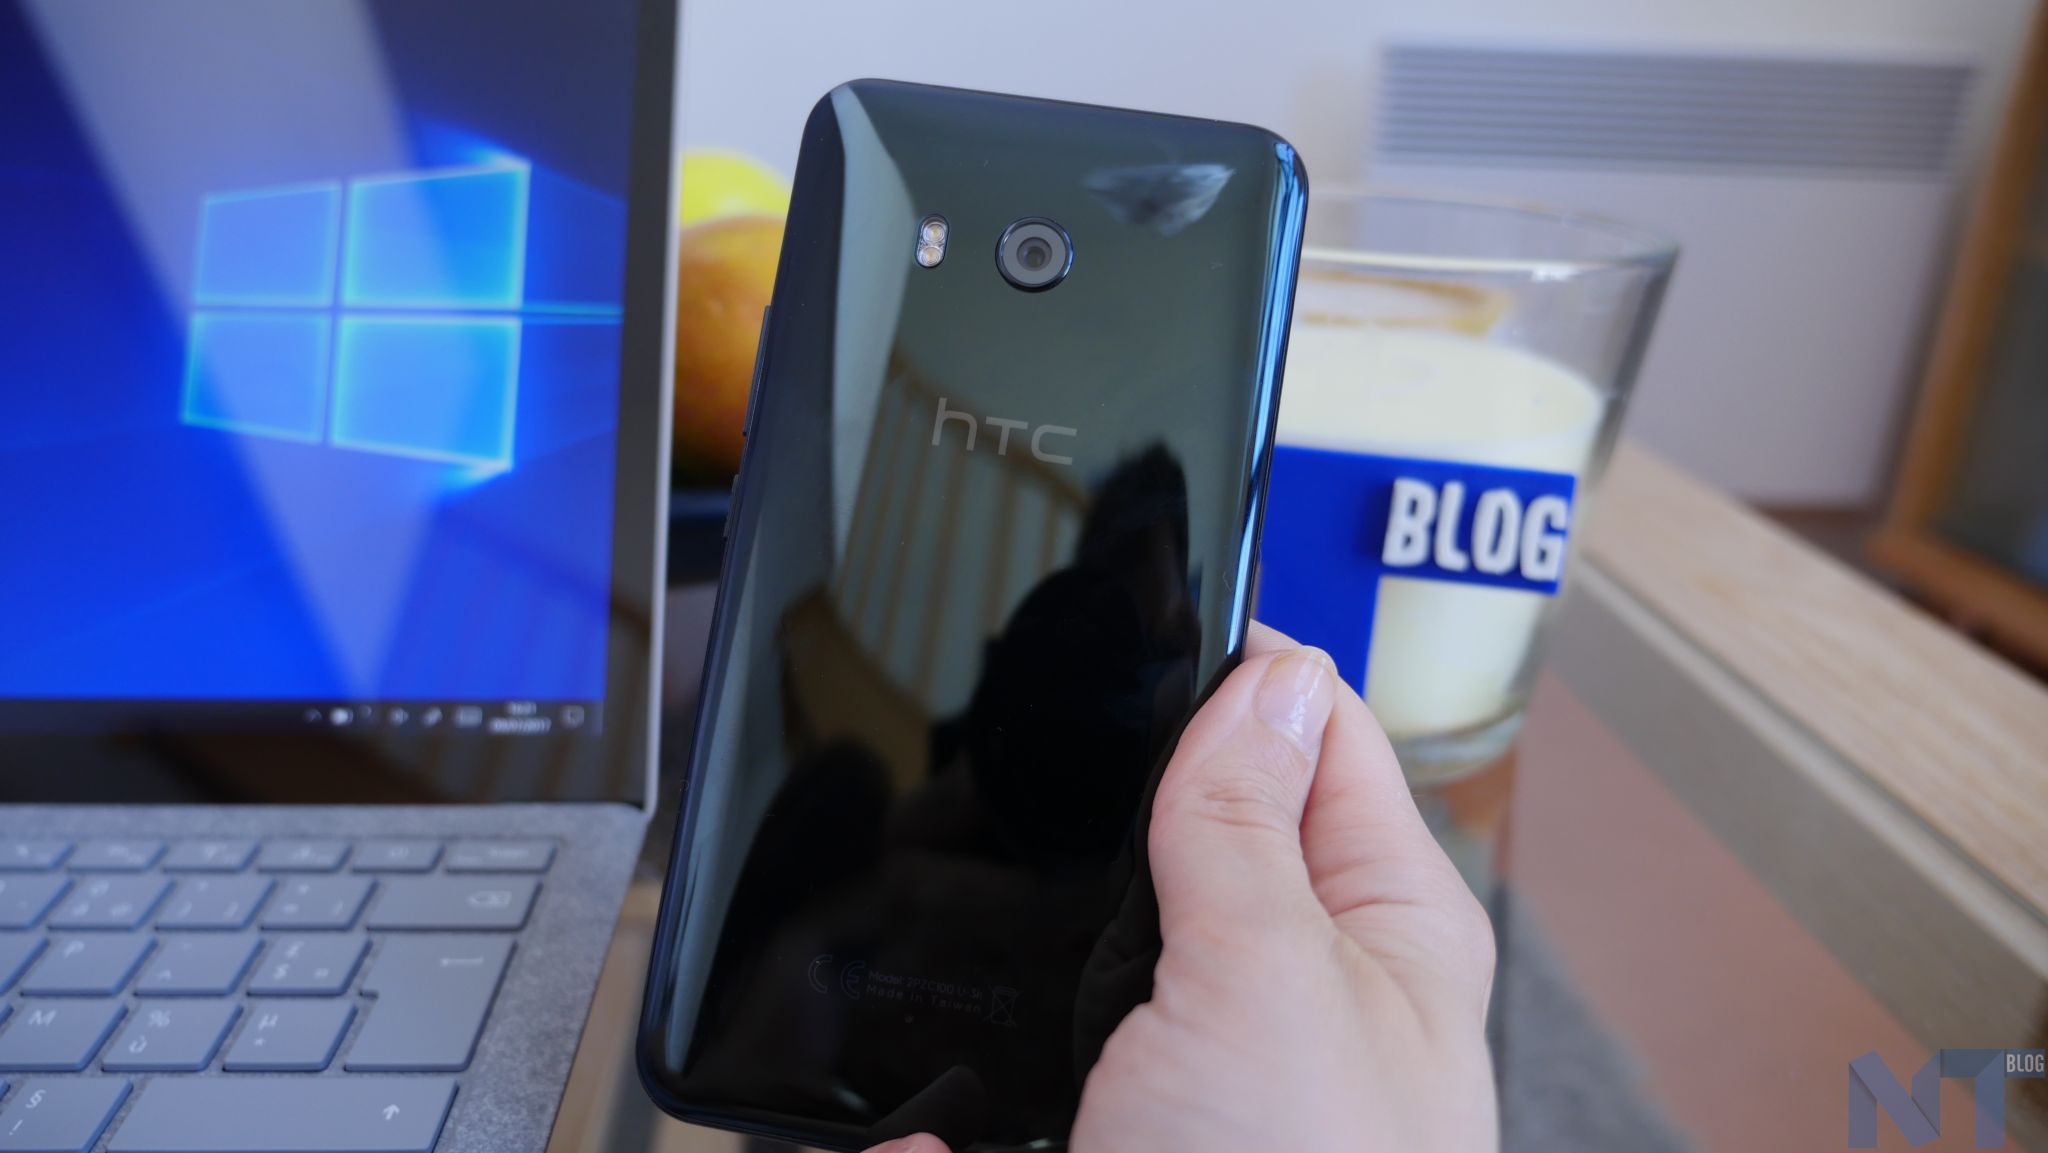 HTC va réduire le nombre de smartphones en 2018 et au-delà